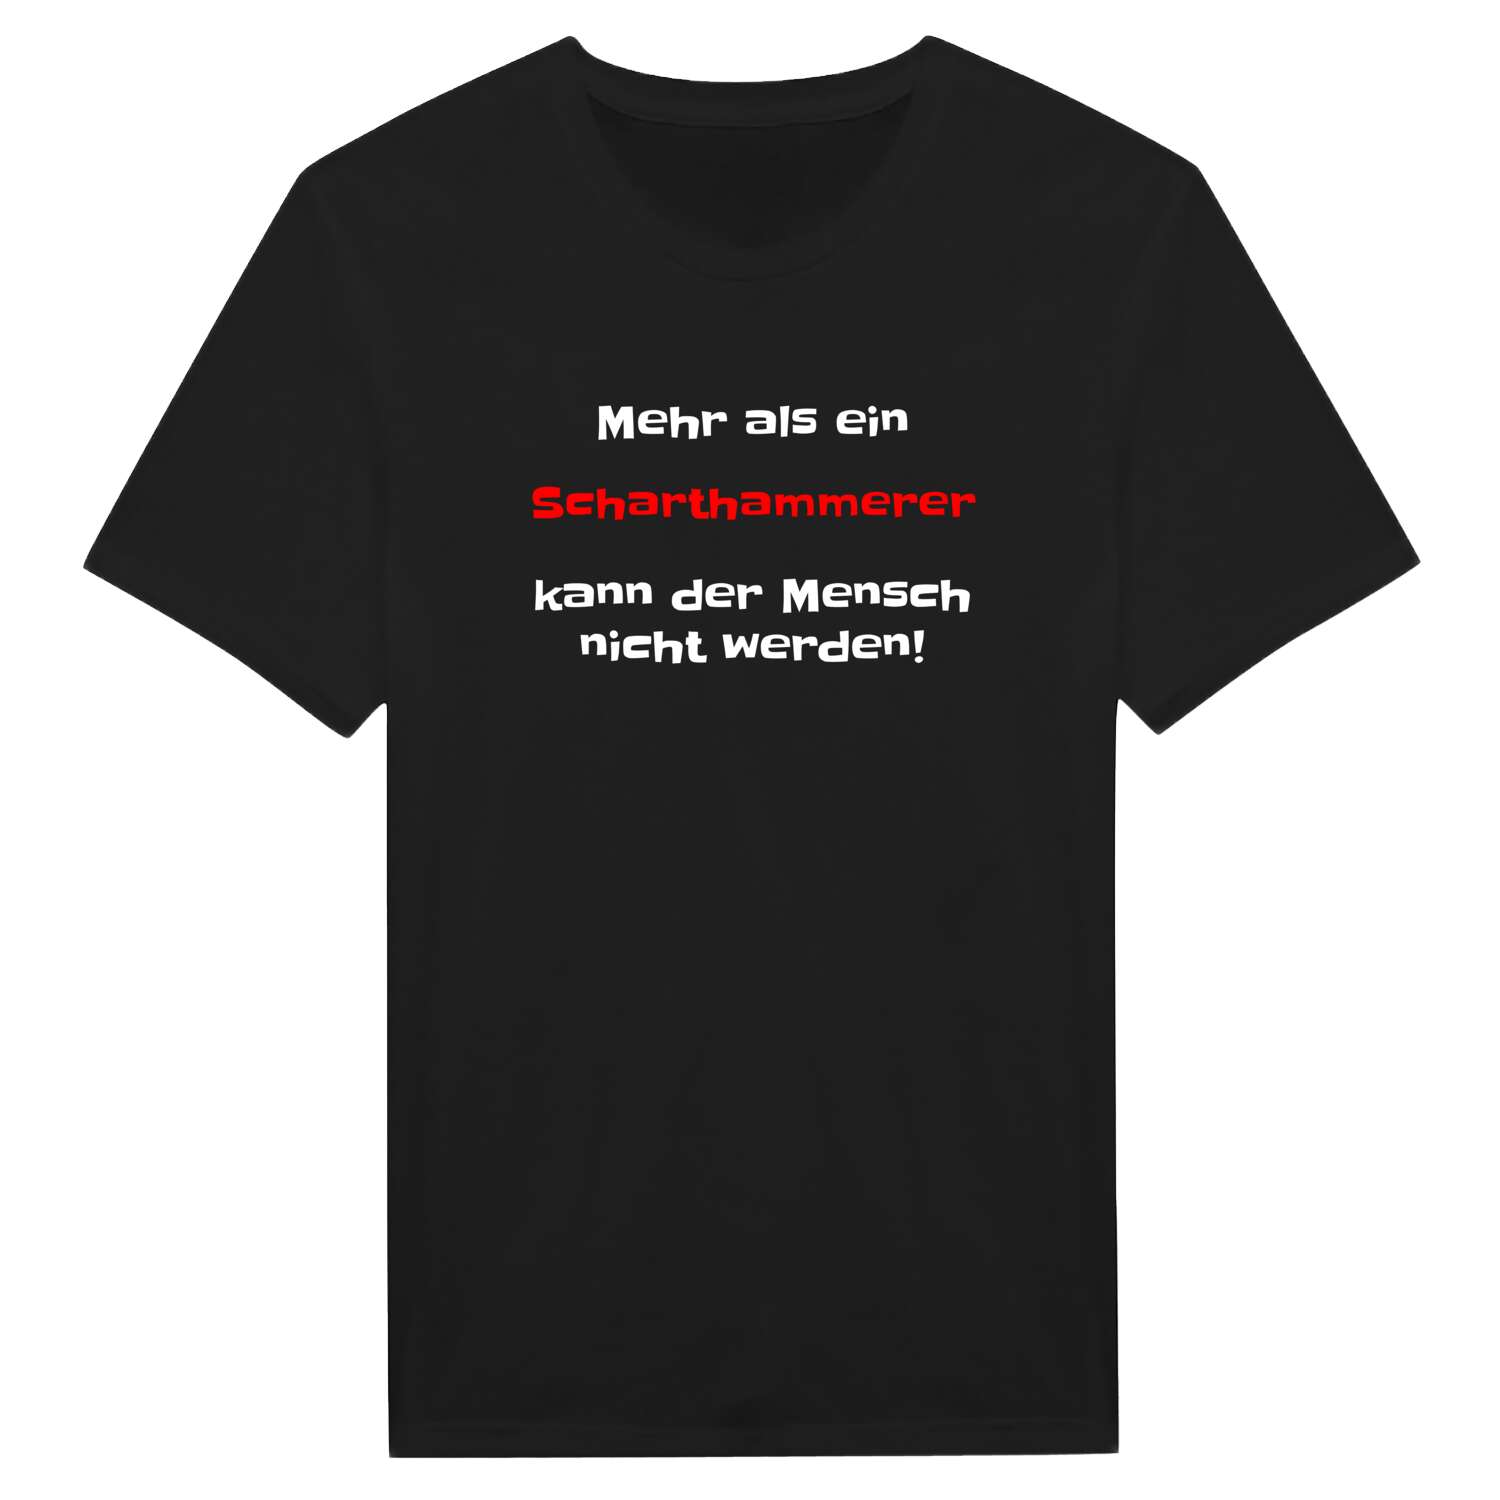 Scharthammer T-Shirt »Mehr als ein«